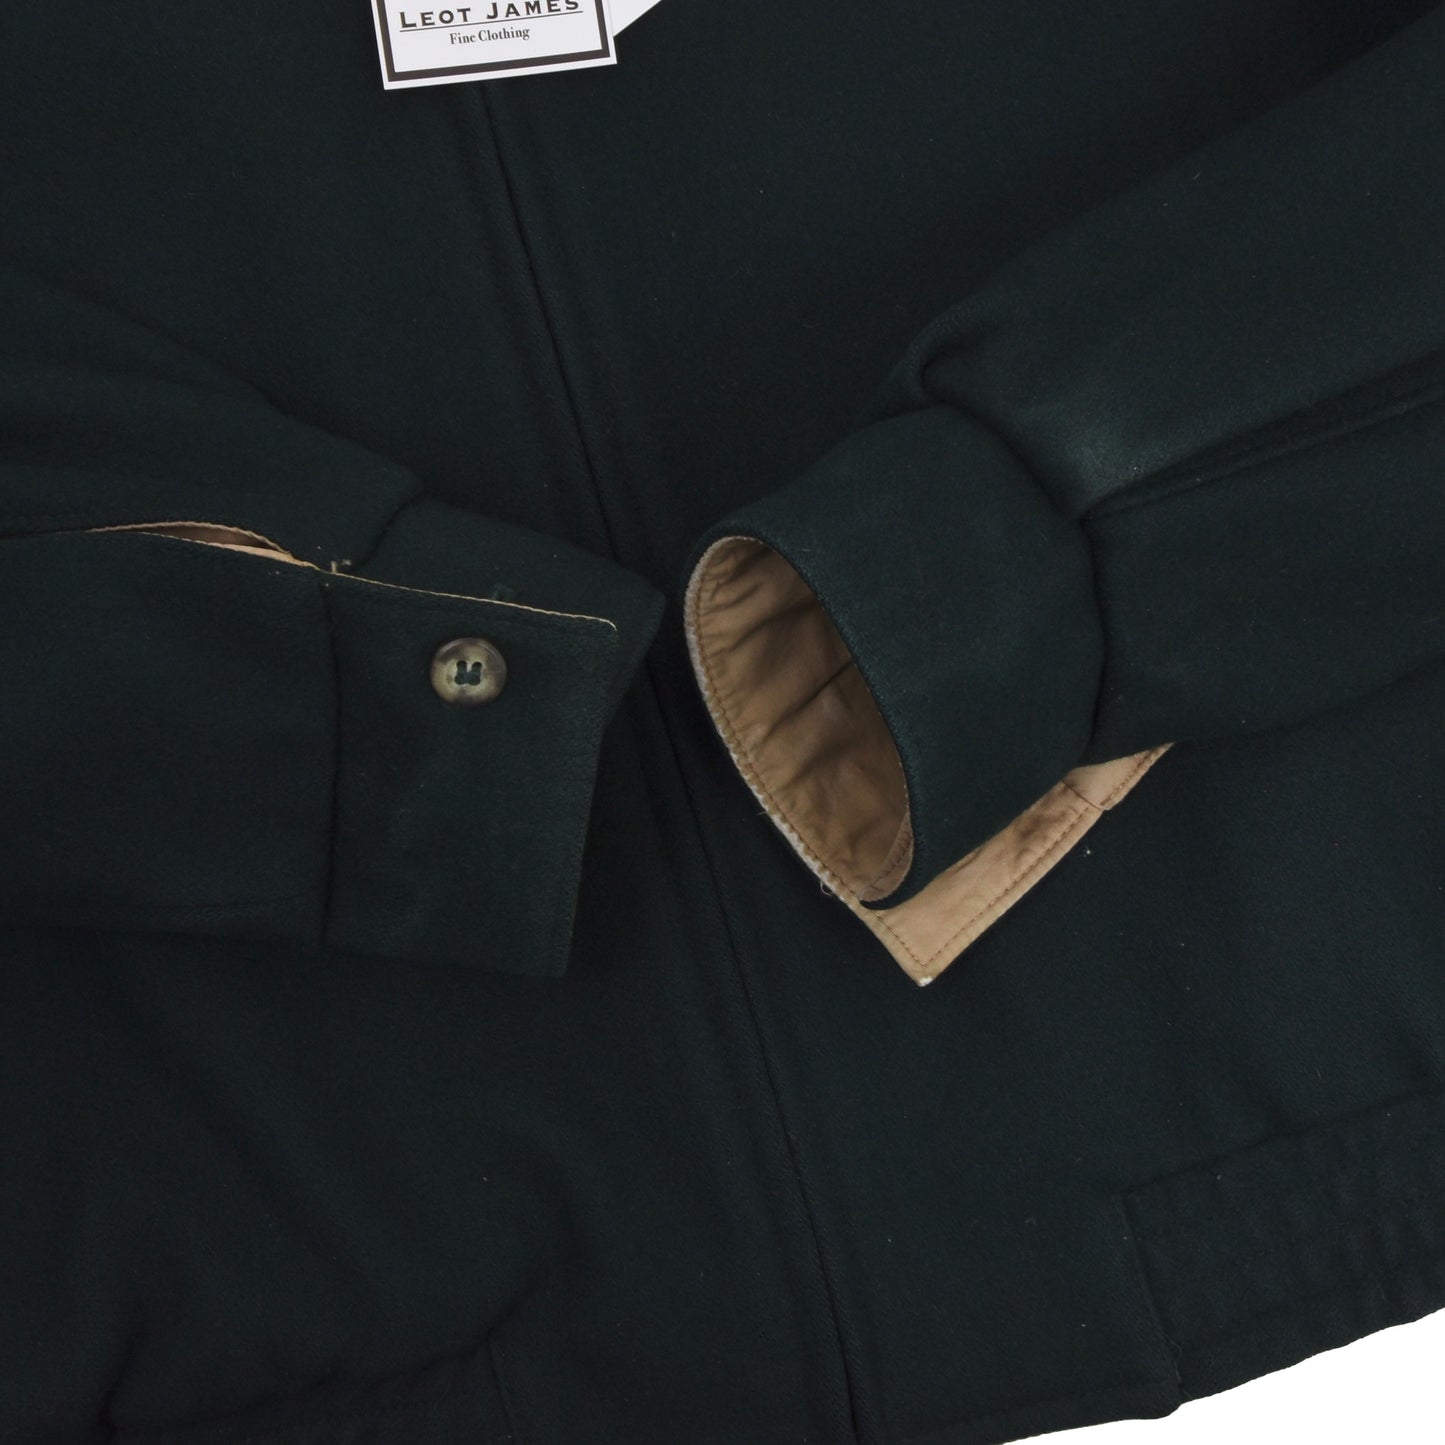 Bullock & Jones Wool Blend Jacket Size US 44 - Loden Green